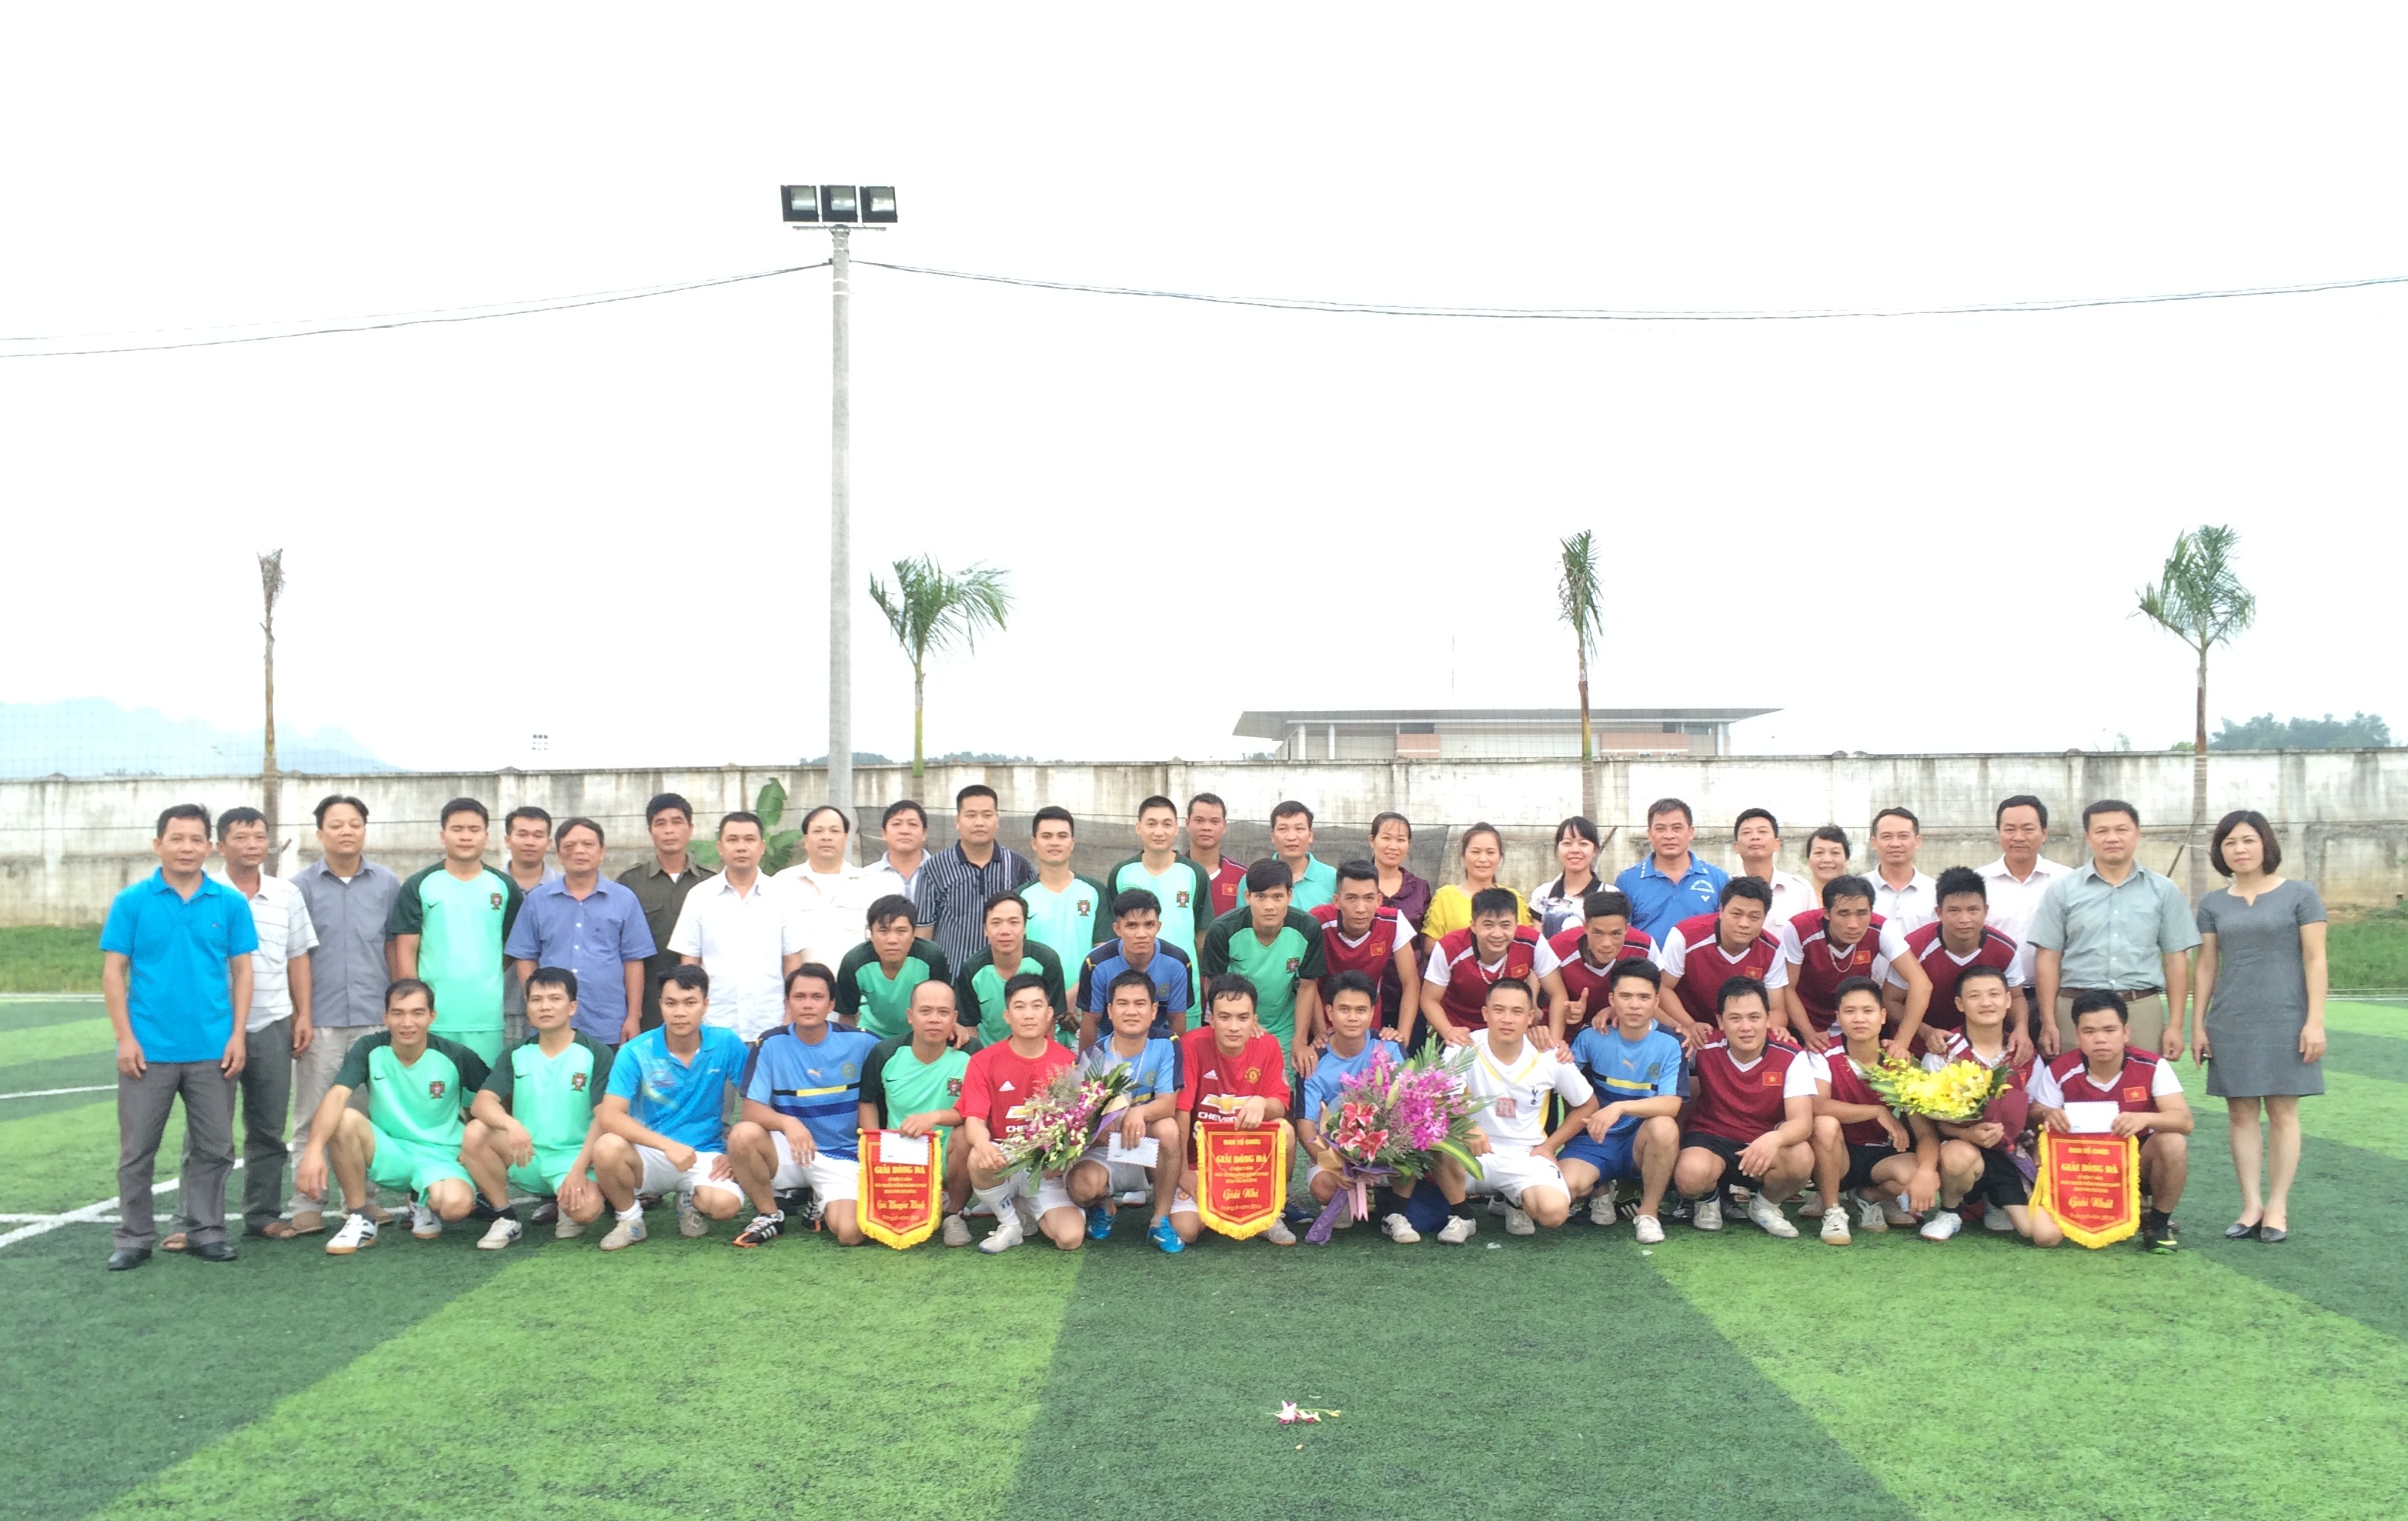 Chi đoàn Cục Thi hành án dân sự tỉnh Cao Bằng tổ chức giải bóng đá  chào mừng kỷ niệm 71 năm  Ngày truyền thống Ngành Tư pháp và  71 nămQuốc khánh nước cộng hòa xã hội chủ nghĩa Việt Nam